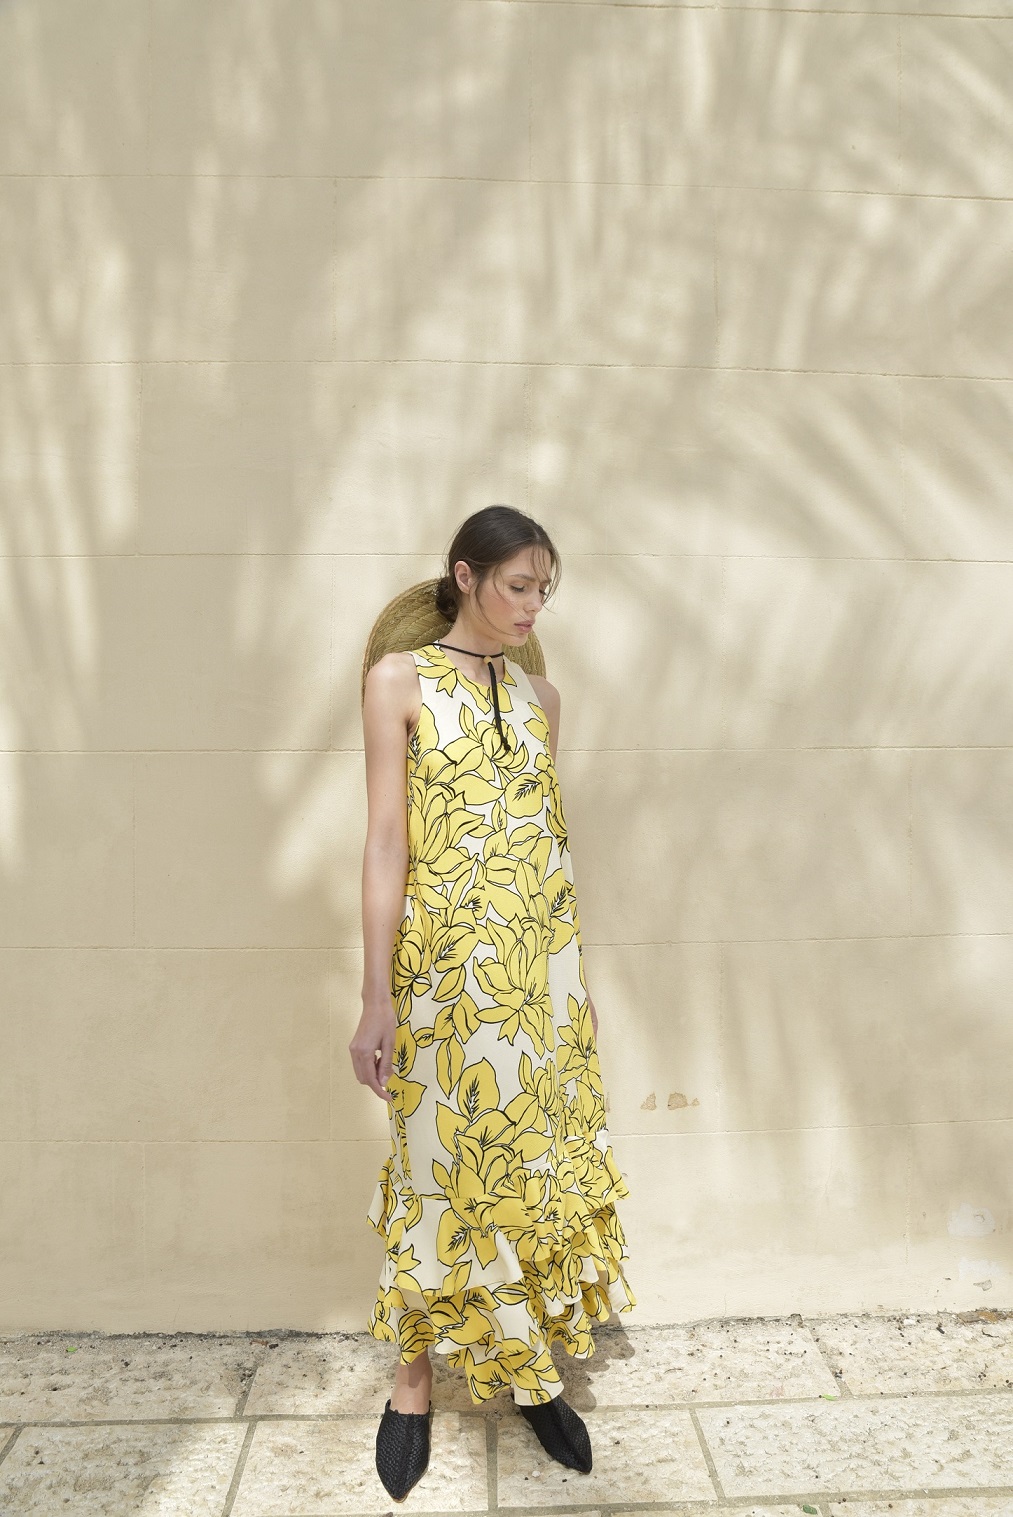 דנה סידי שמלת אייברי 890 שח צילום אביב אברמוב